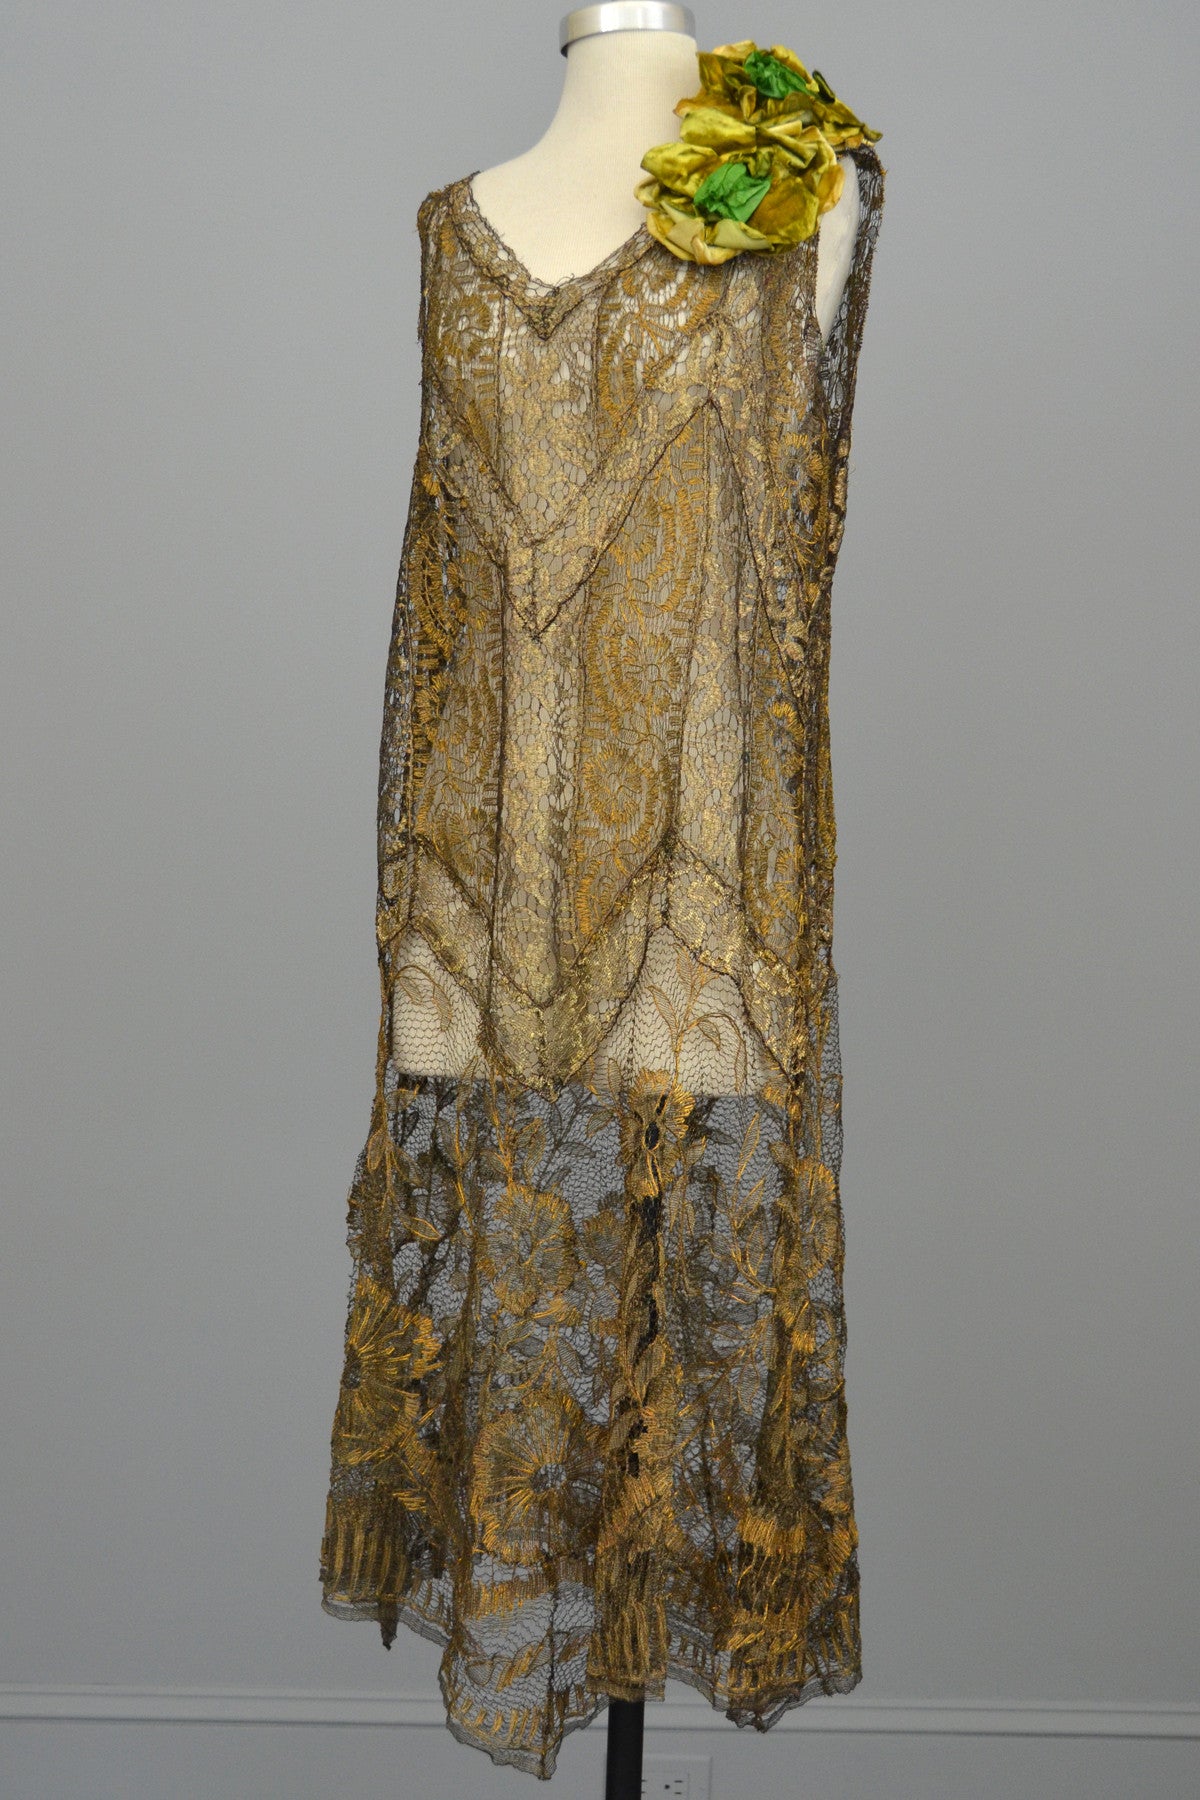 authentic 1920s flapper dress